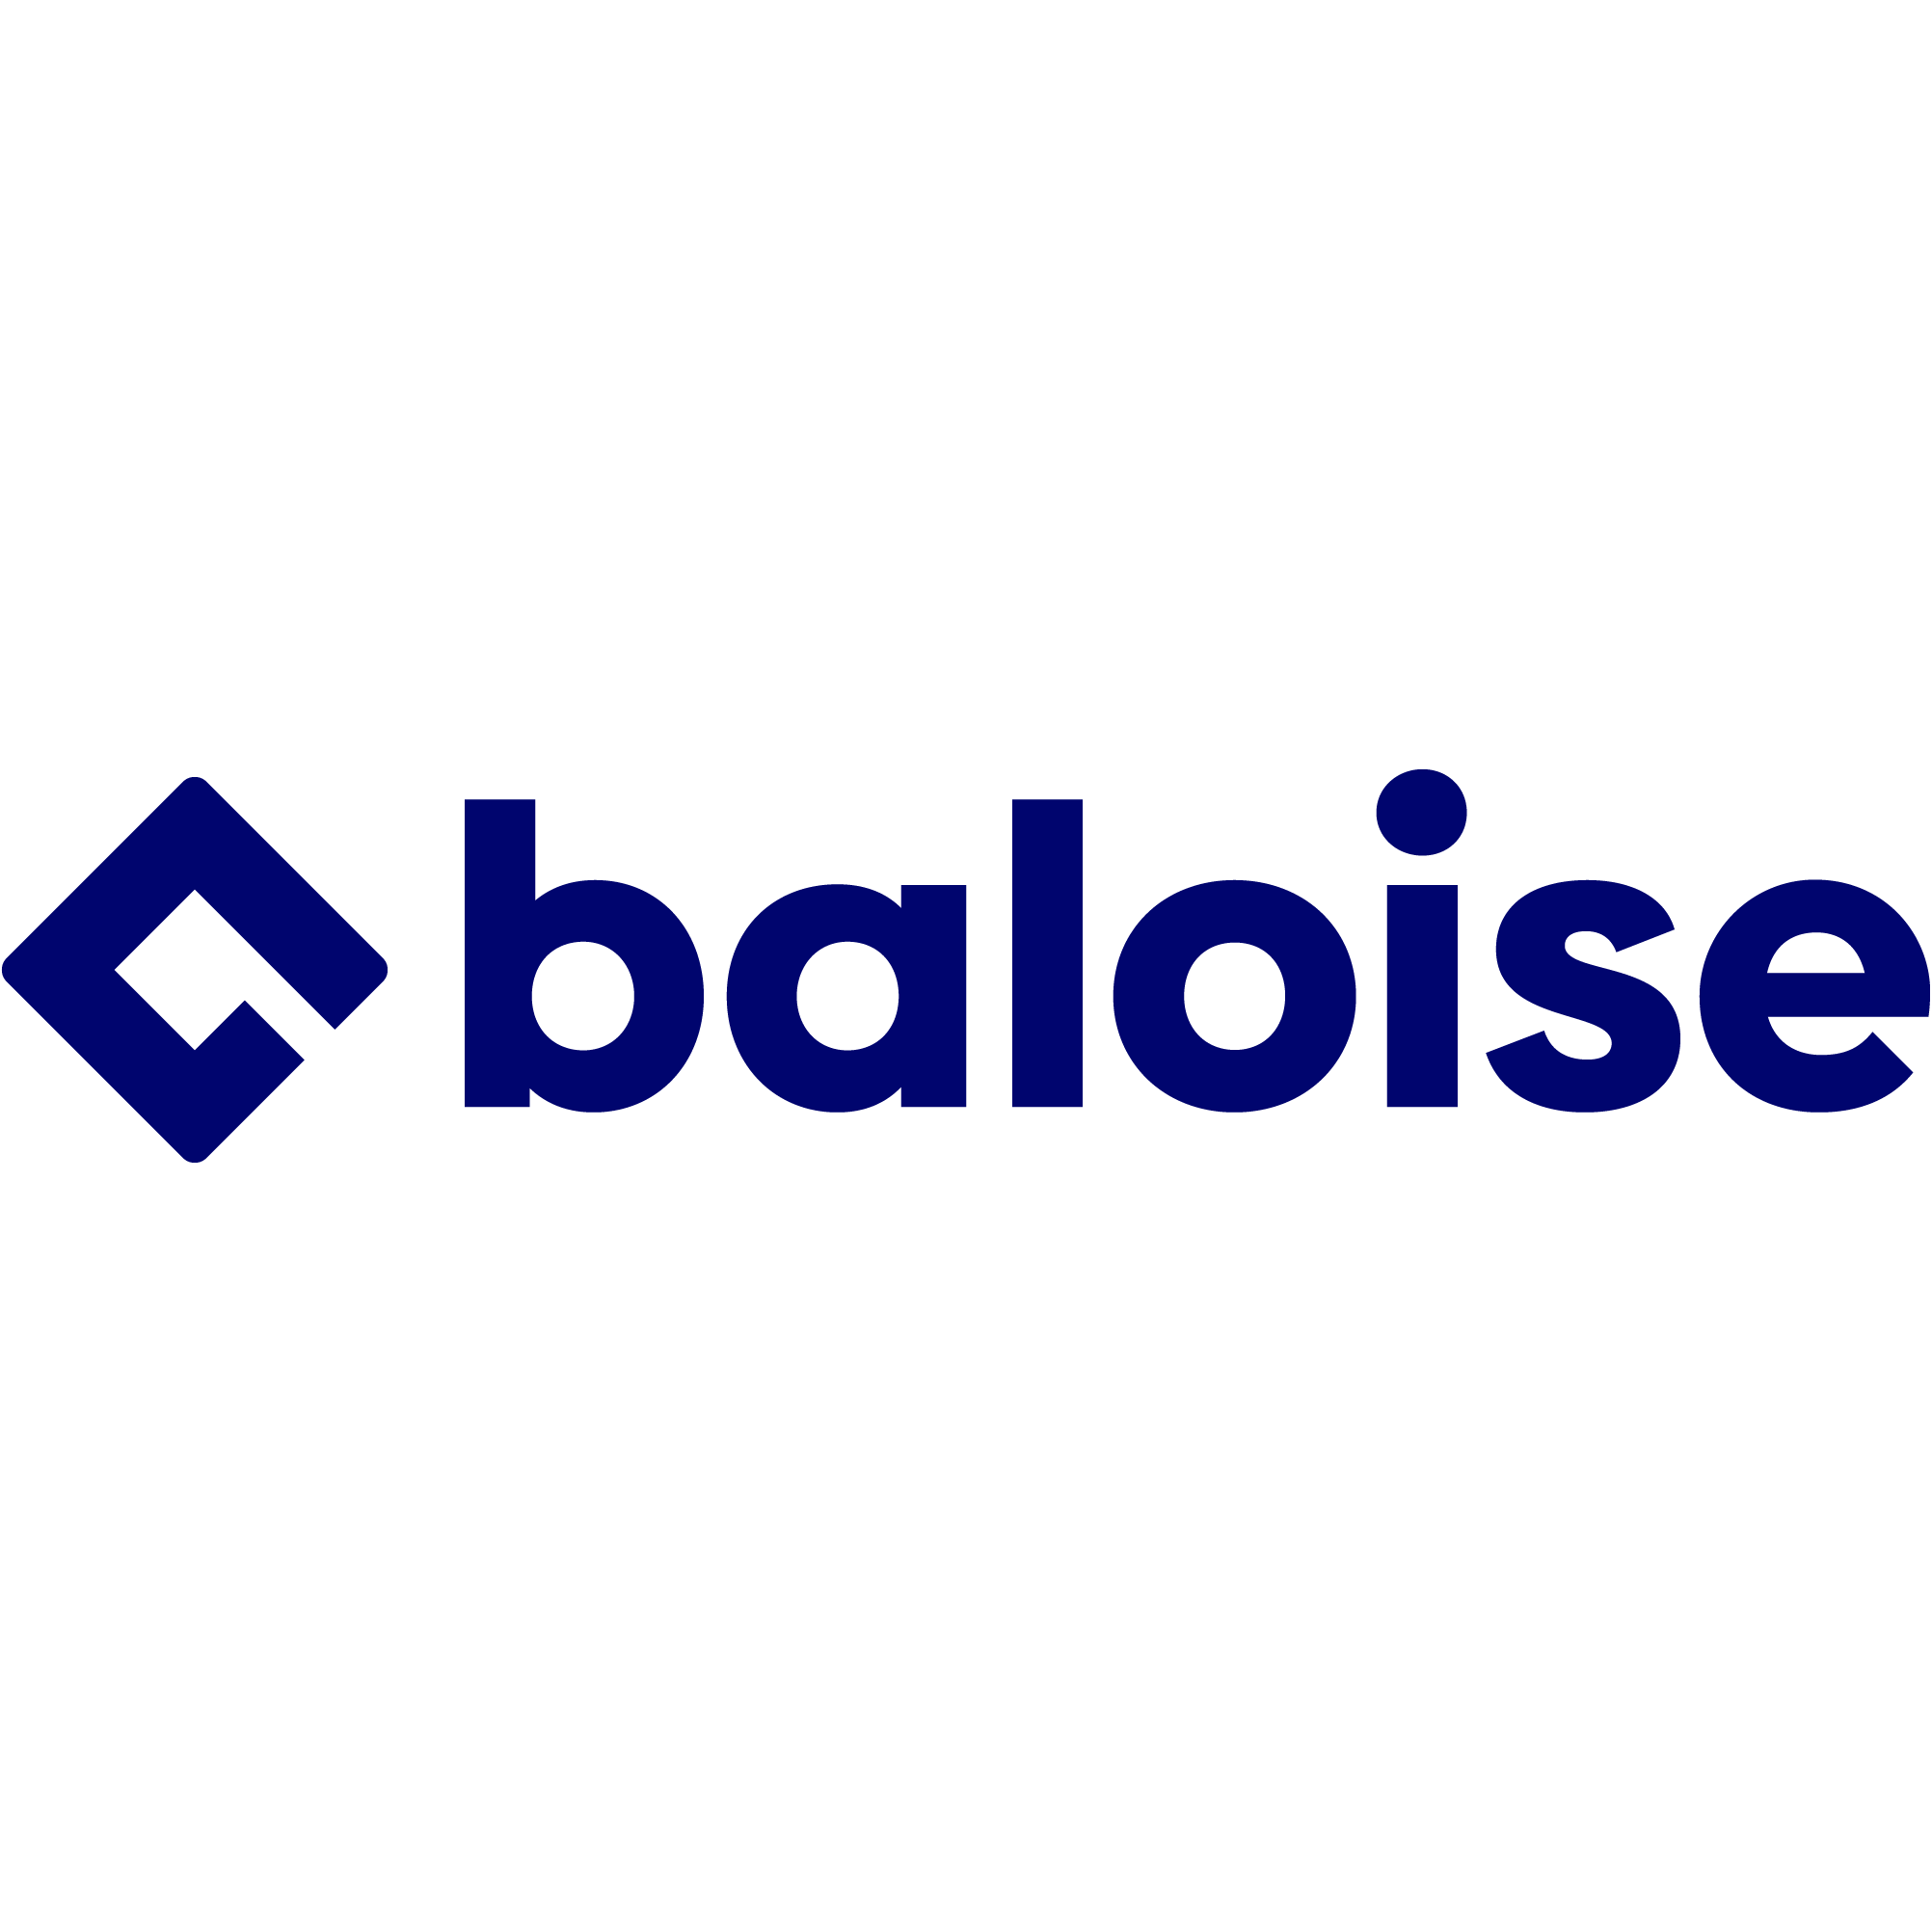 Baloise - Generalagentur Michael Müller in Miltenberg in Miltenberg - Logo